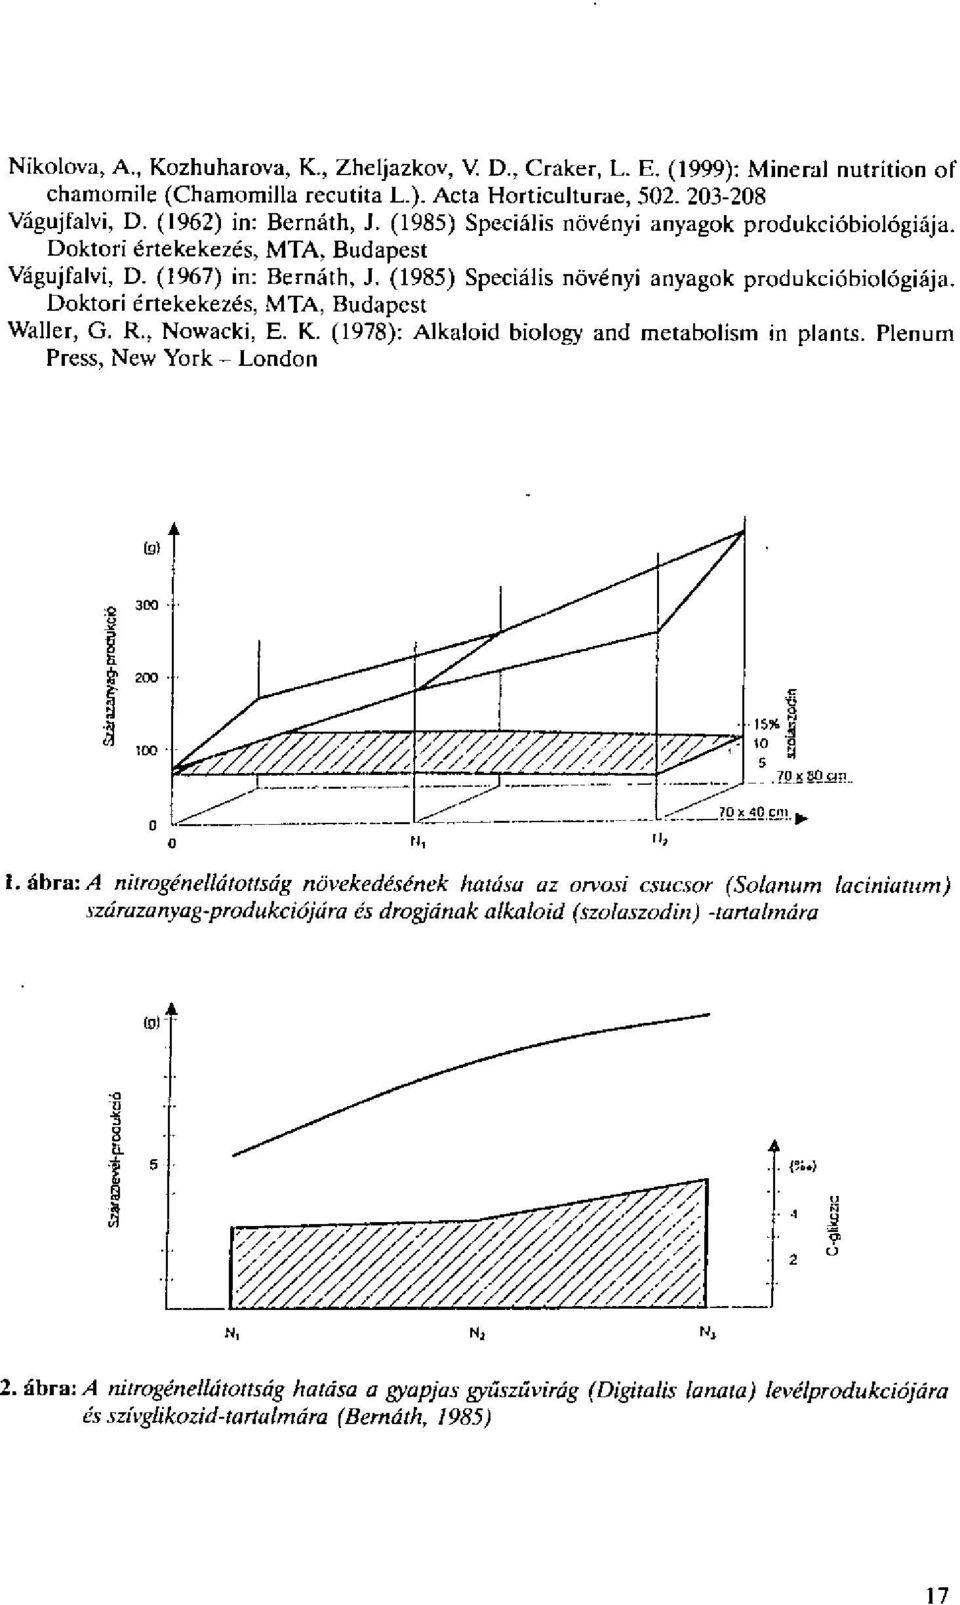 Doktori 6rtekekezds, MTA, Budapest Waller, G. R., Nowacki, E. K. (1978): Alkaloid biology and metabolism in plants. Plenum Press, New York - London (g) og,jlii, 15%....T 40 om I.